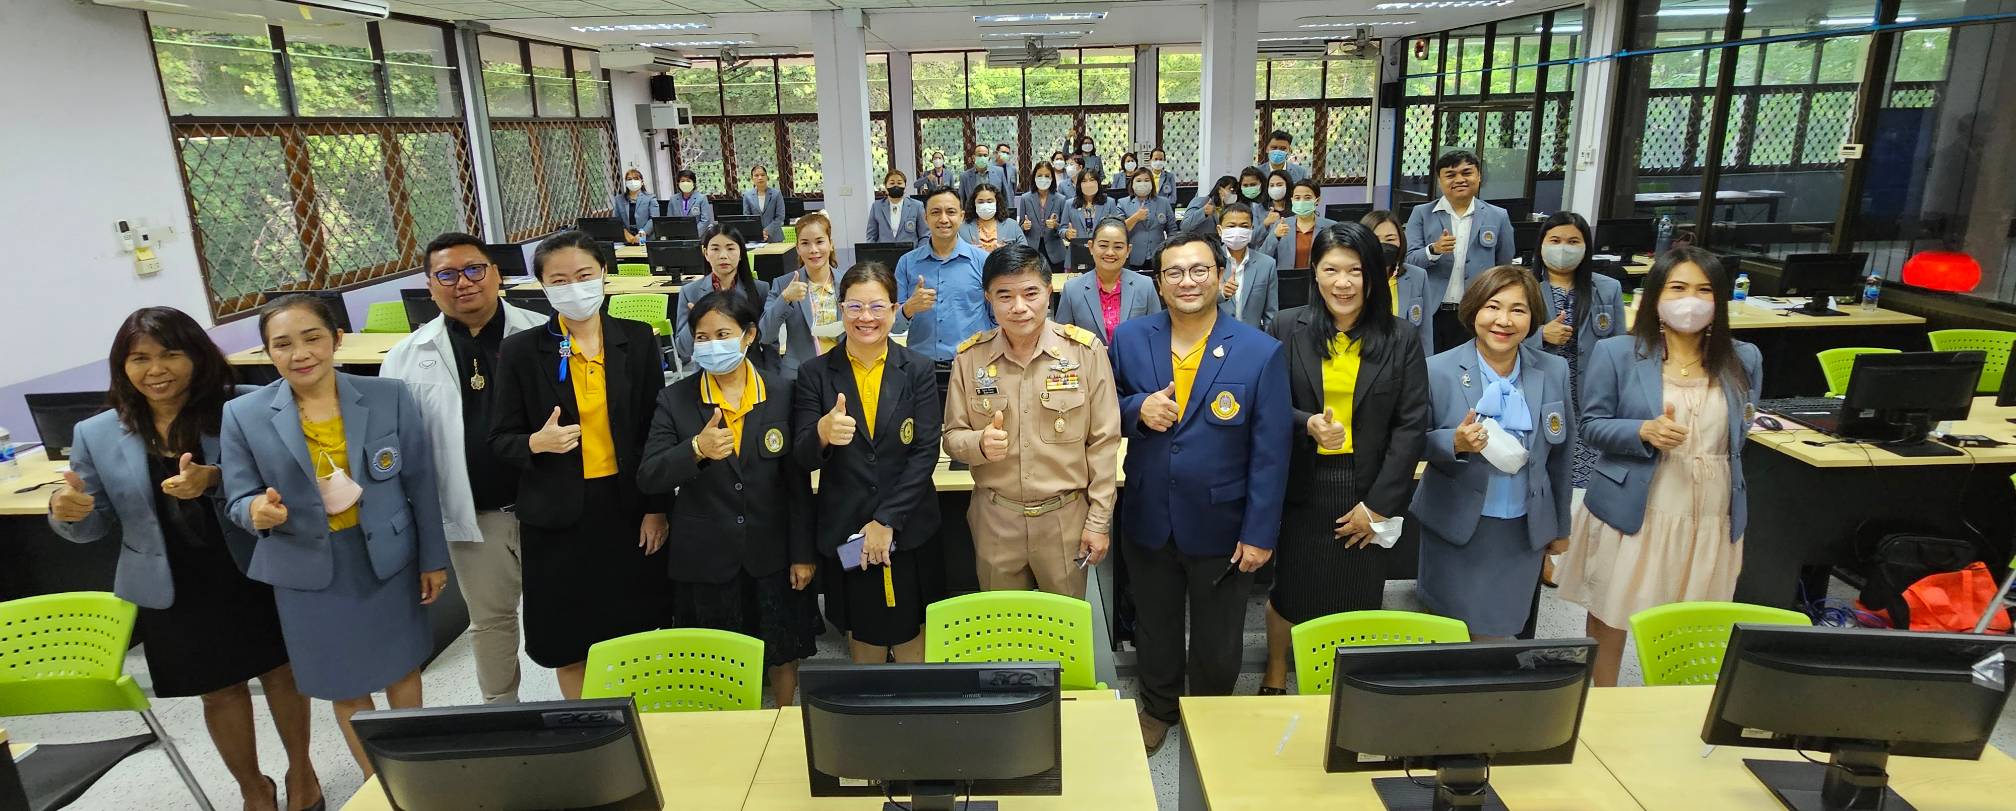 สำนักงานศึกษาธิการจังหวัดกาญจนบุรี จัดประชุมเชิงปฏิบัติการจัดการข้อมูล การวิเคราะห์ข้อมูลในการรายงานโดยใช้ระเบียบวิธีวิจัย  ภายใต้โครงการเสริมสร้างศักยภาพบุคลากรในสำนักงานศึกษาธิการจังหวัดกาญจนบุรี ประจำปีงบประมาณ 2566